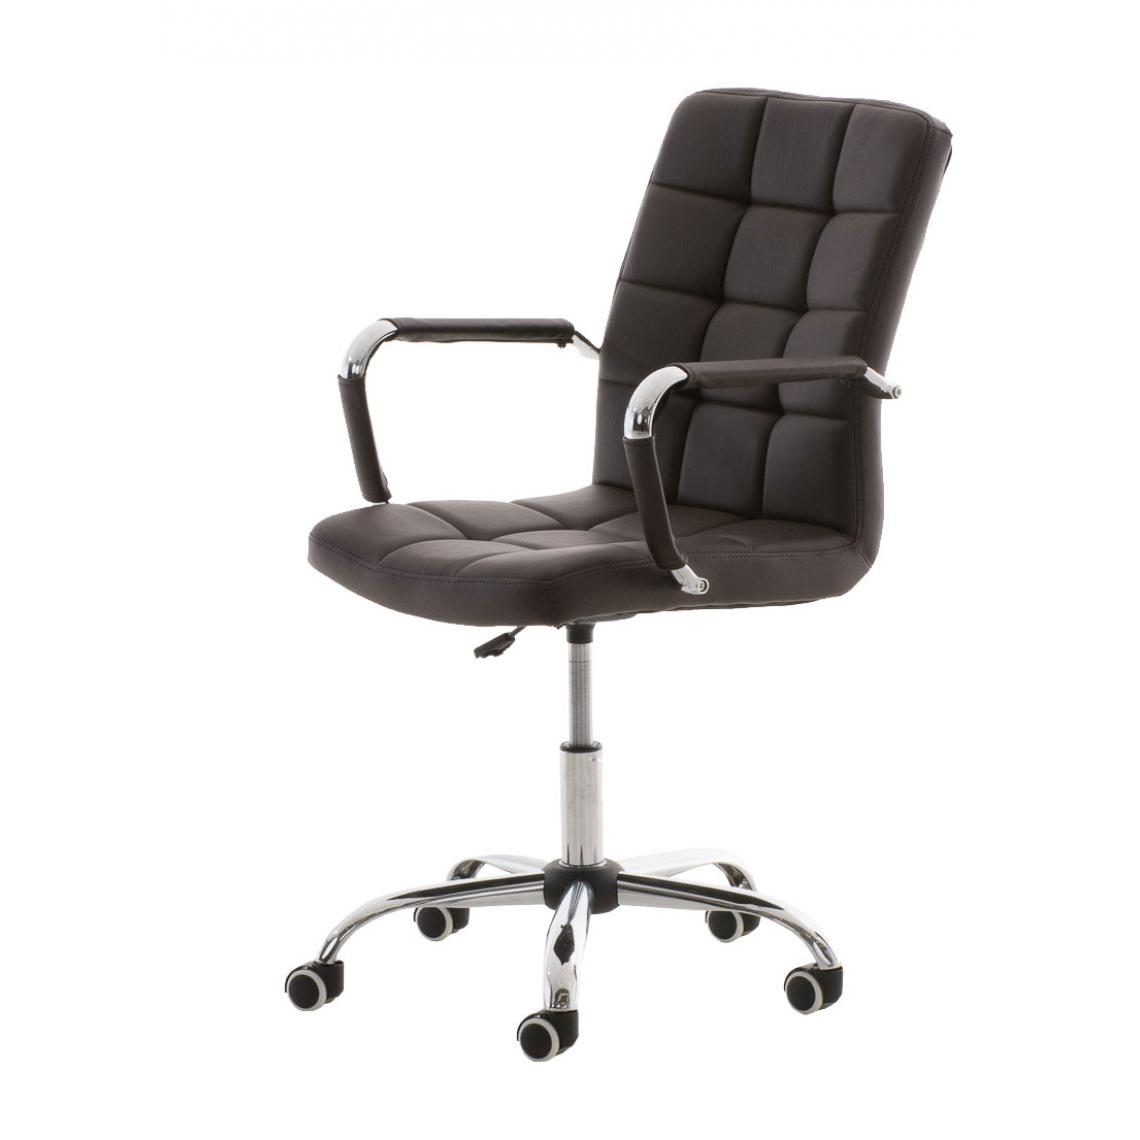 Icaverne - Magnifique Chaise de bureau reference Helsinki V2 couleur marron - Chaises